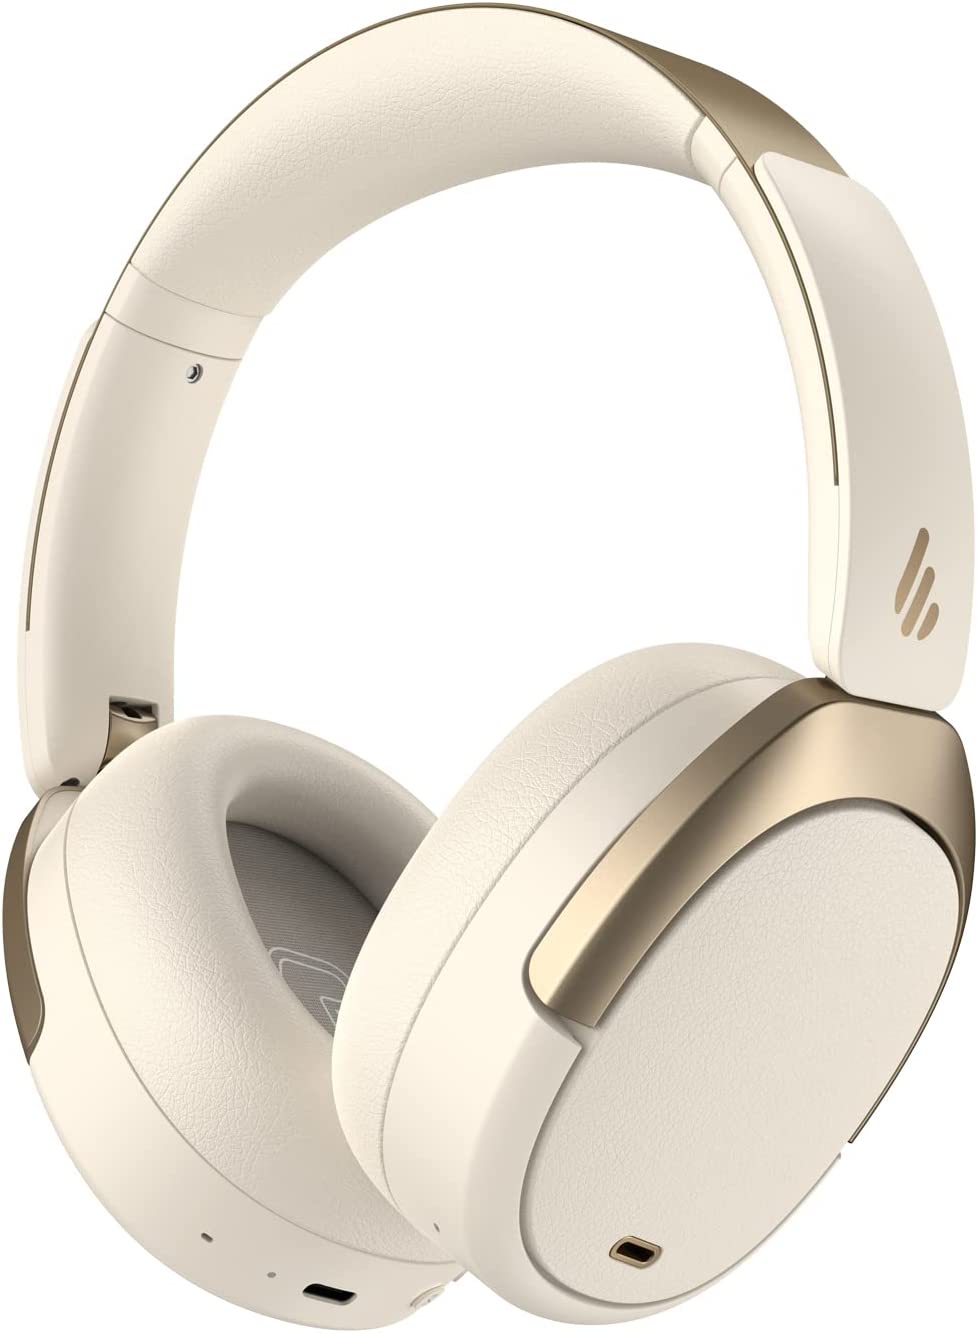 אוזניות קשת אלחוטיות עם ביטול רעשים אדיפייר EDIFIER WH950NB בצבע לבן